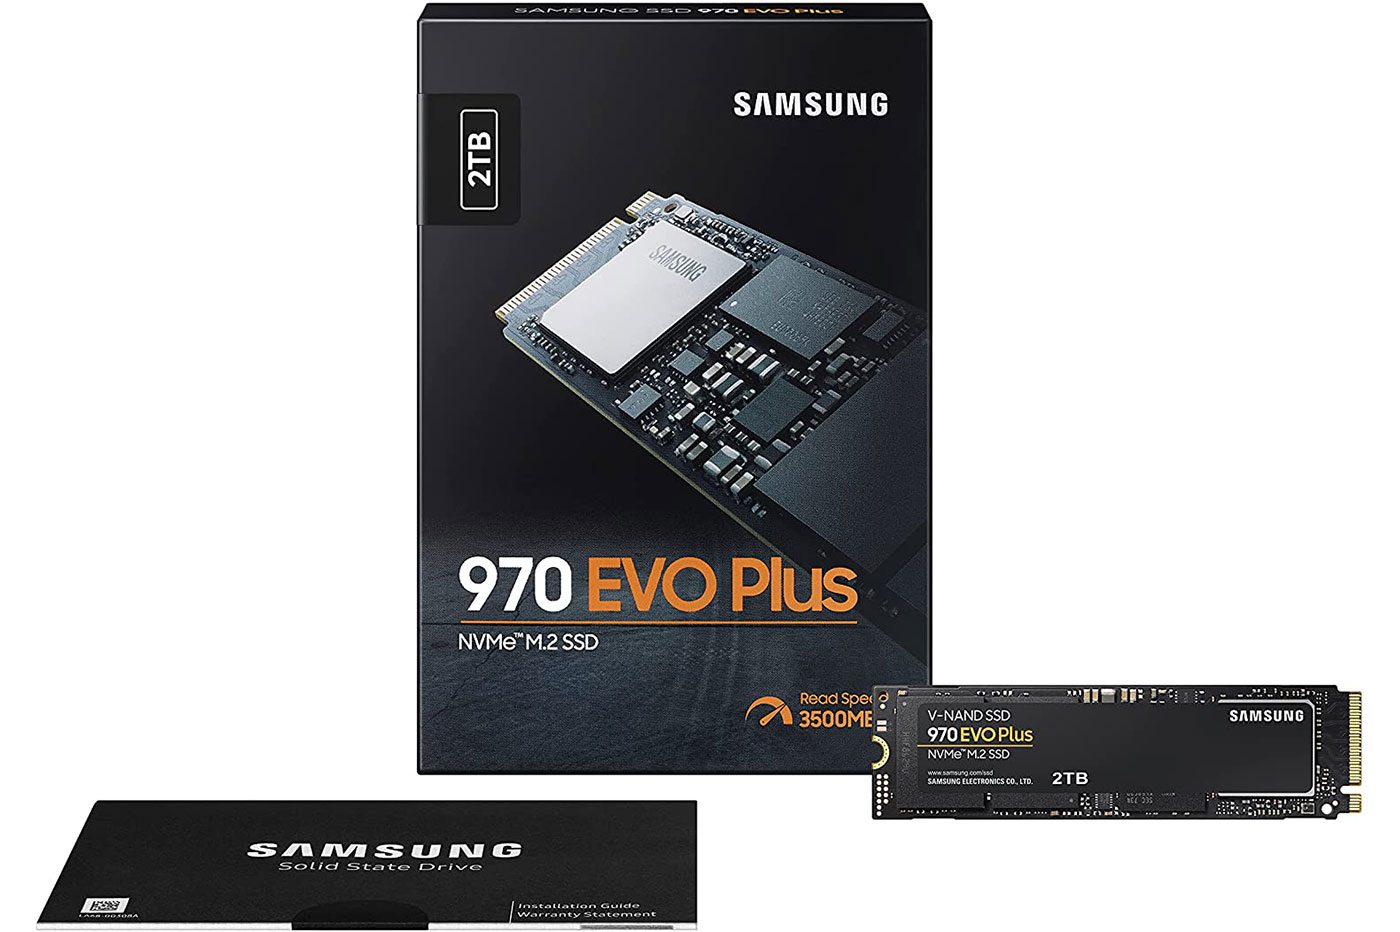 Vous n'hallucinez pas, le SSD Samsung 970 EVO Plus 2 To est bien à